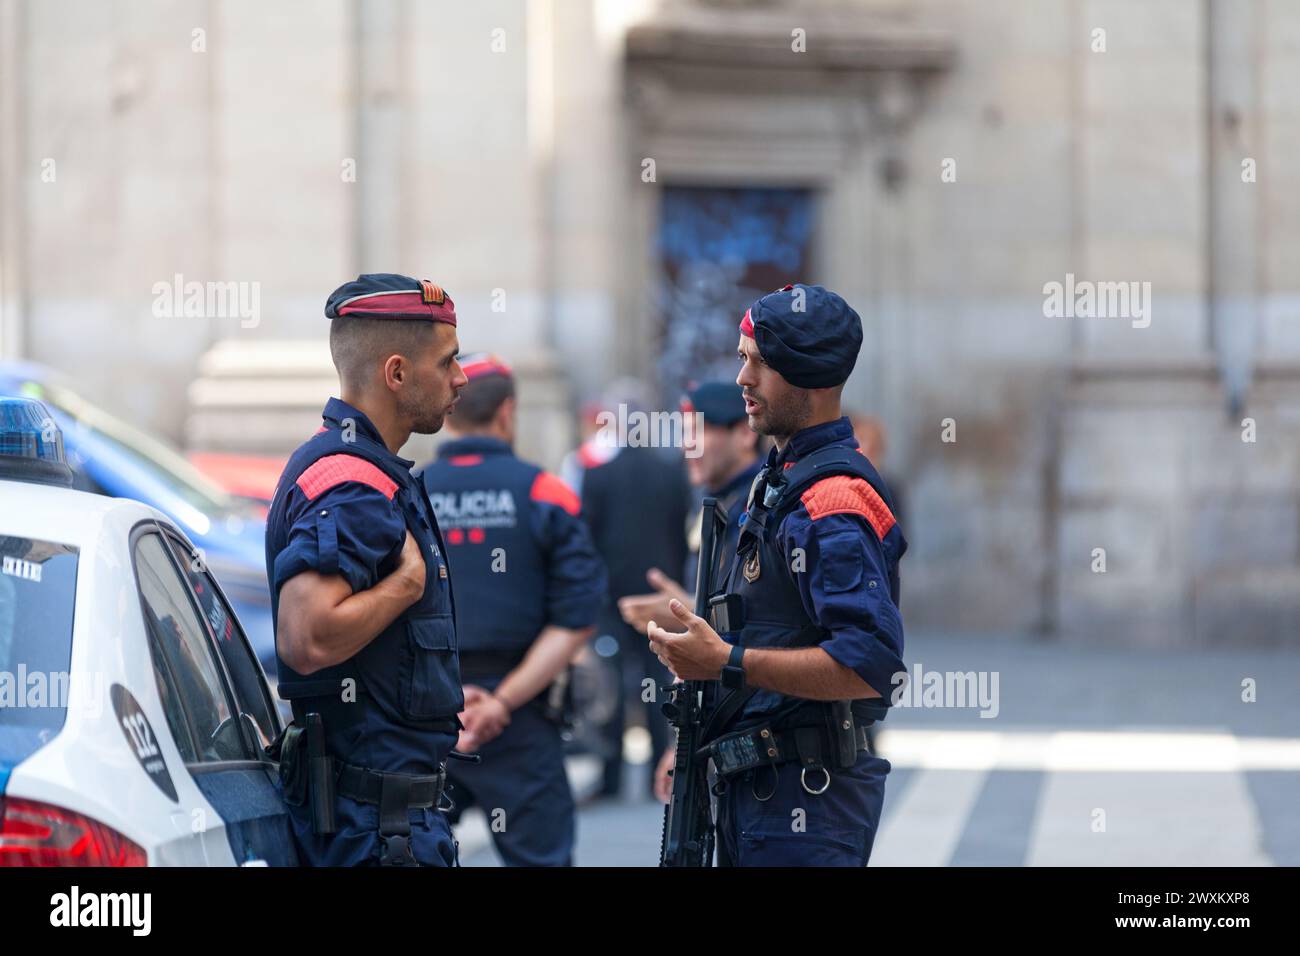 Barcellona, Spagna - 08 giugno 2018: Agenti di polizia del Mossos d'esquadra discutono con la loro auto. Foto Stock